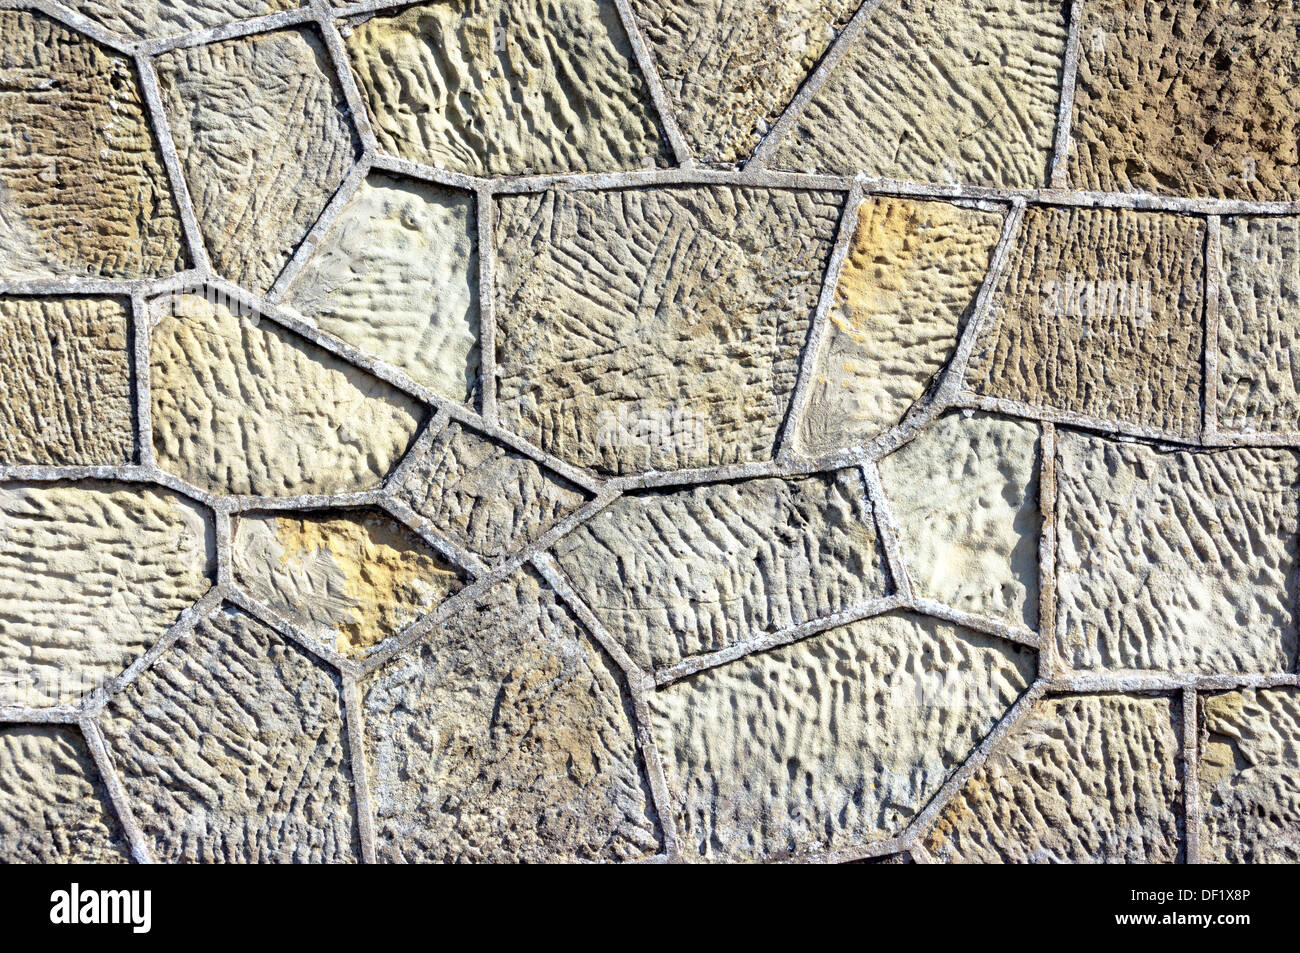 Textures rugueuses sur un mur de béton avec des formes géométriques Banque D'Images